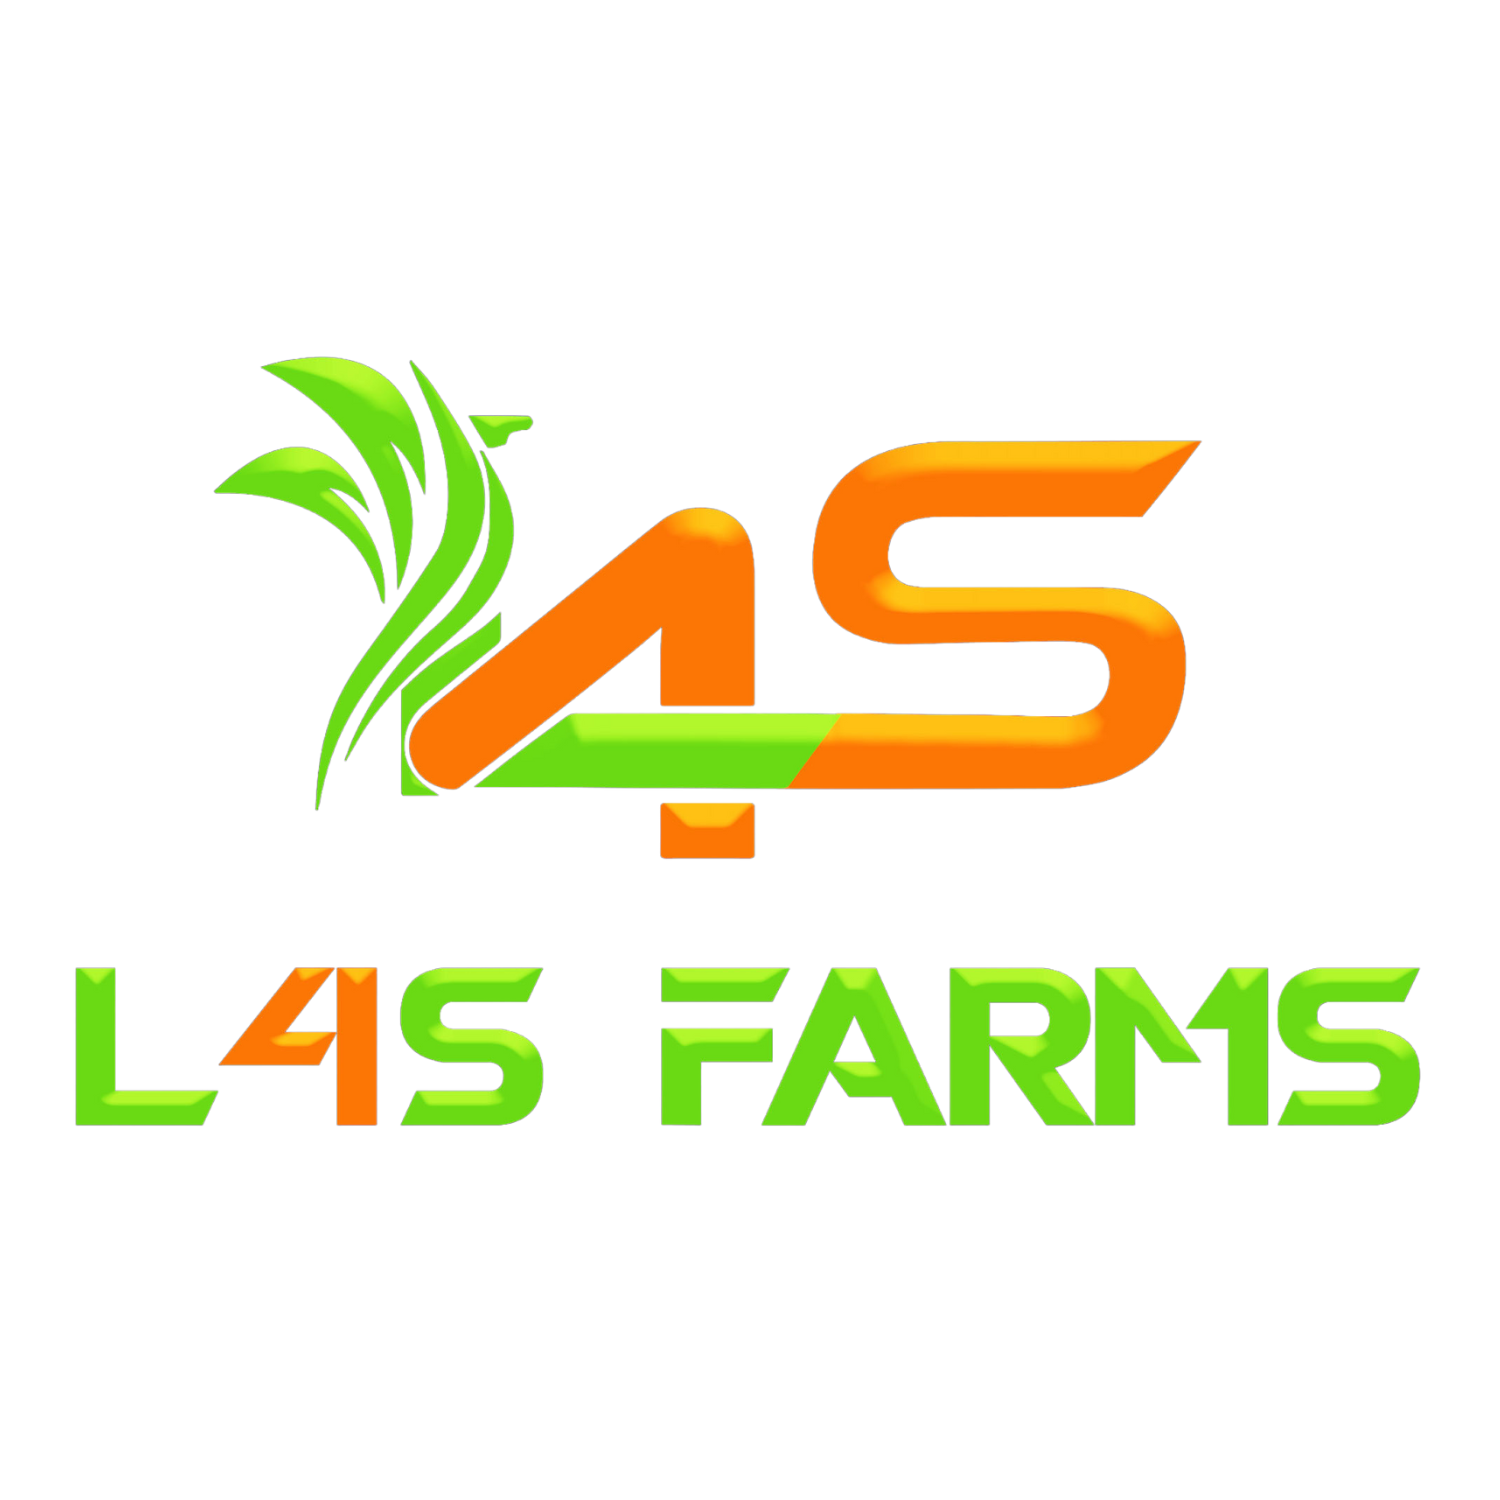 L4S Farms